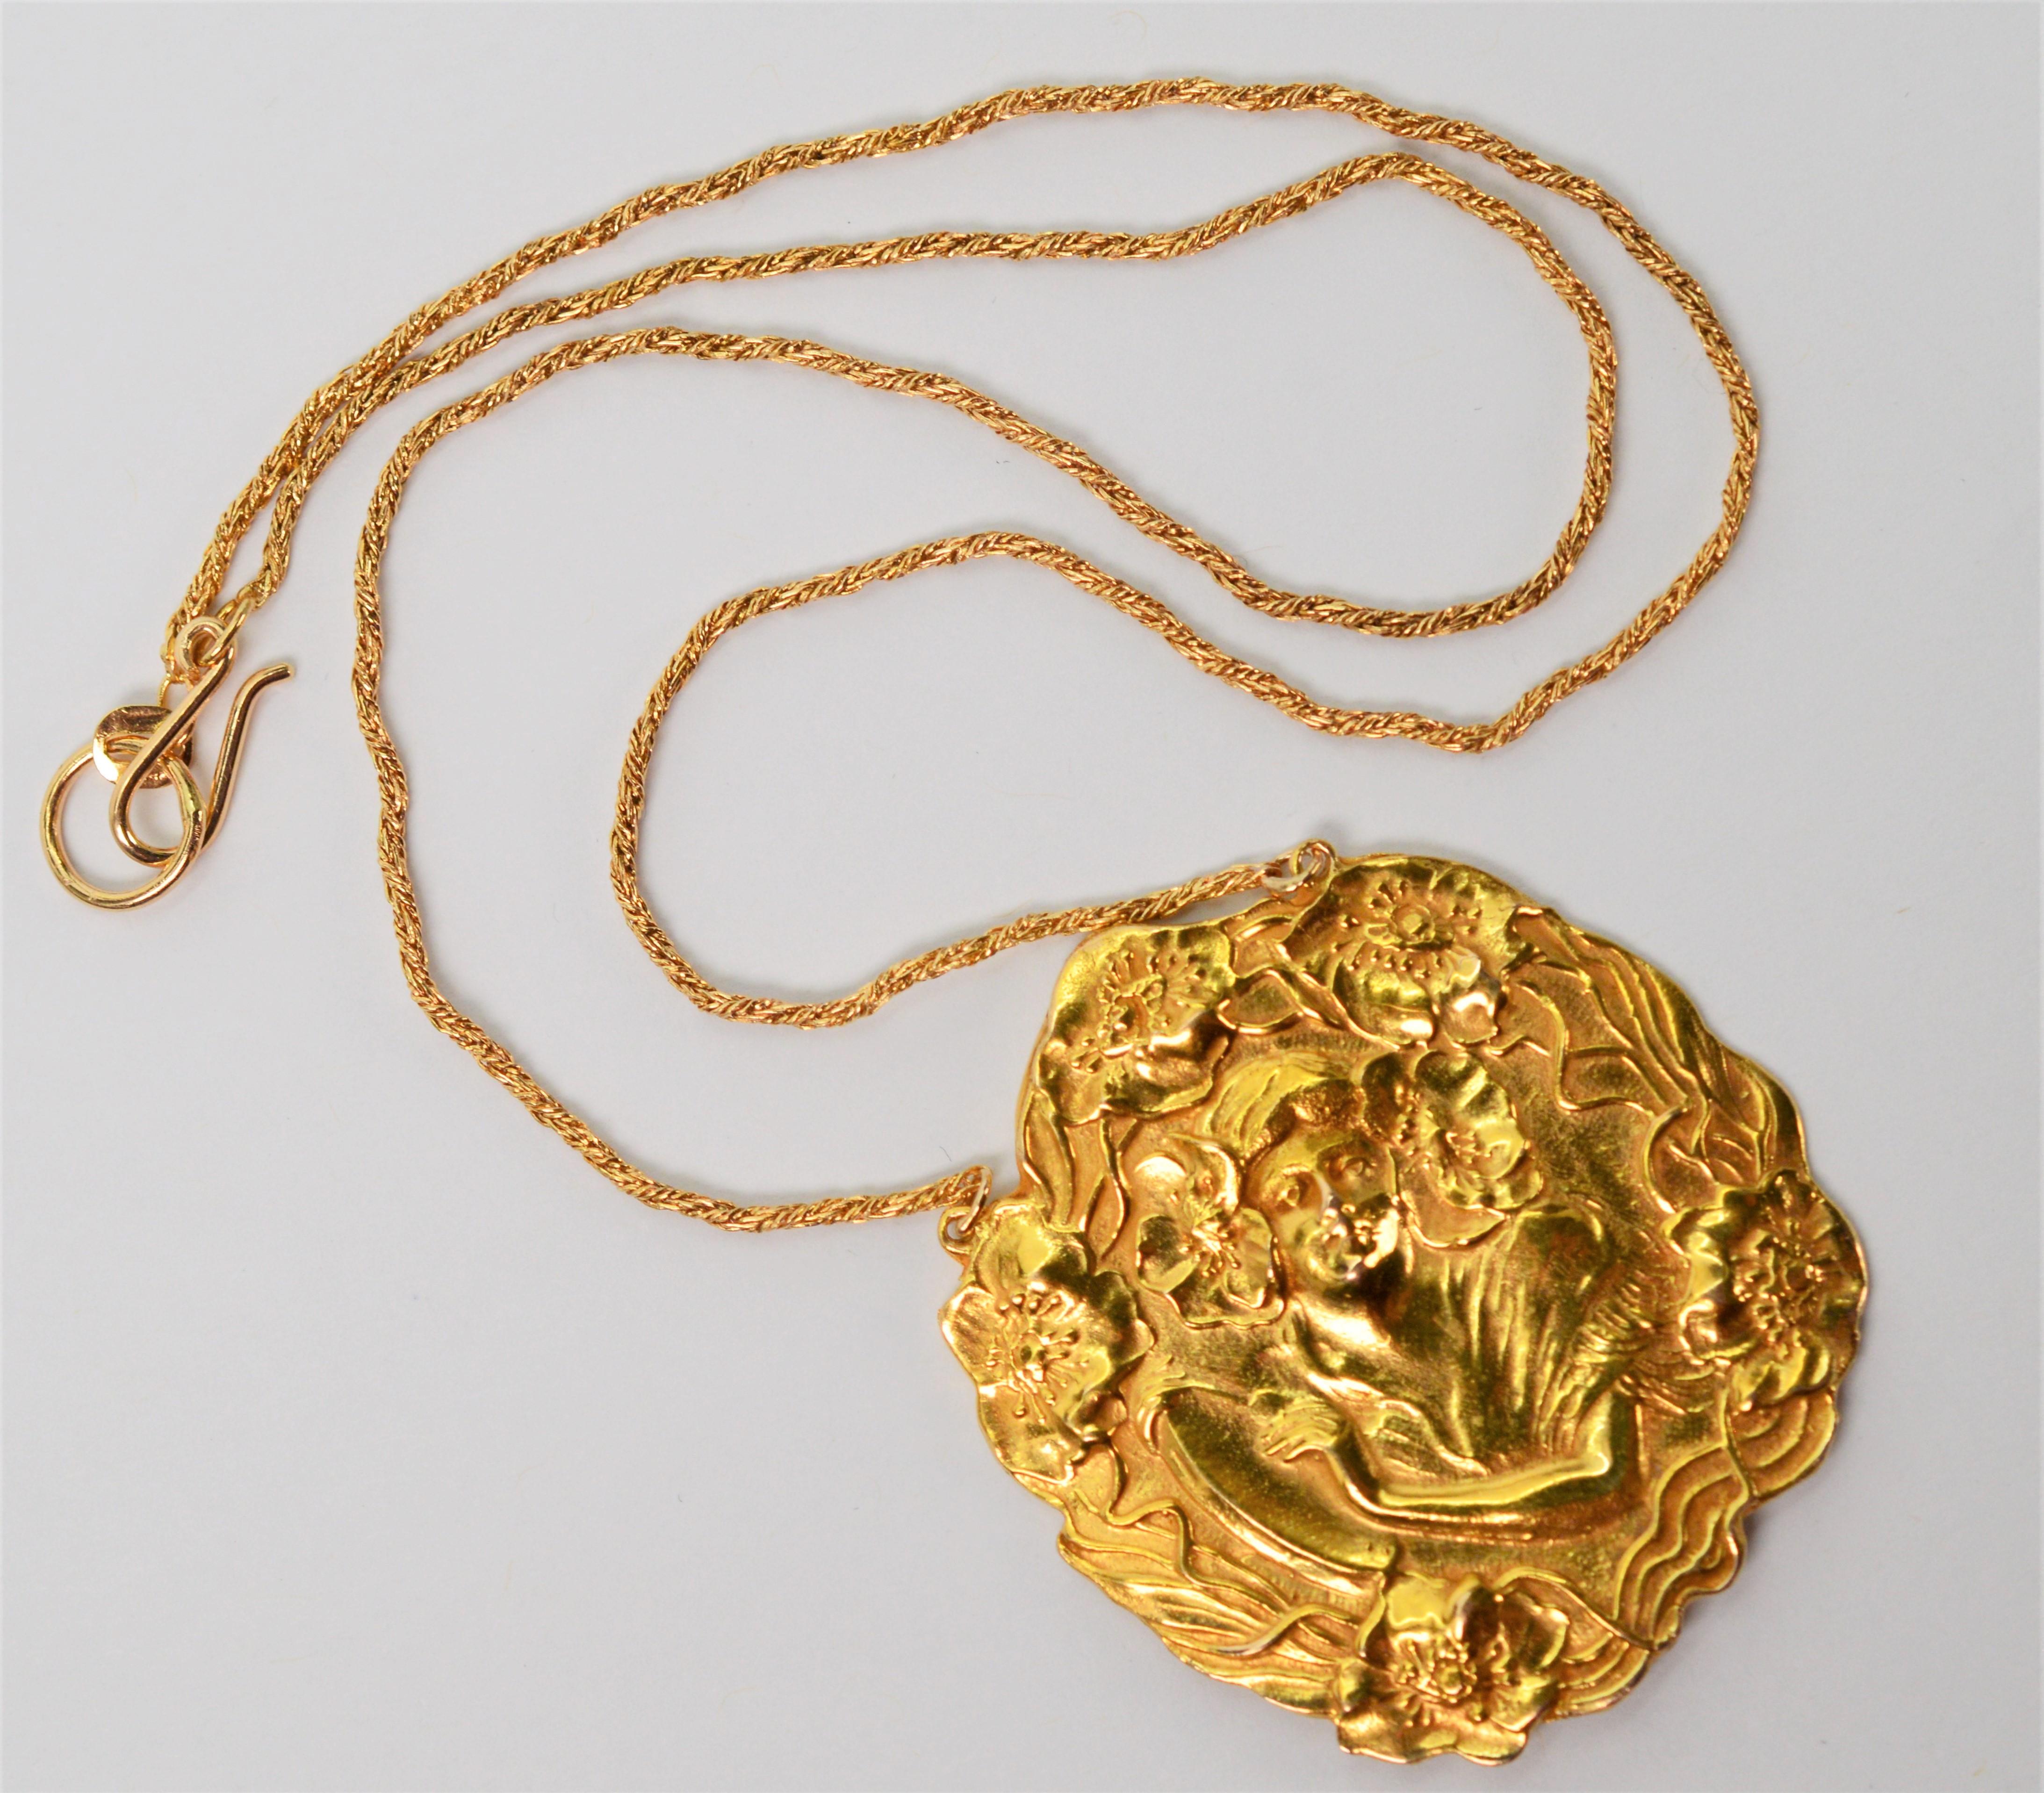 Avec une forme libre fantaisiste moulée en or jaune 14 carats, ce collier pendentif romantique dénote la nature artistique et les courbes du style Art nouveau. Cette reproduction artisanale d'un pendentif ancien est suspendue à une chaîne en or de